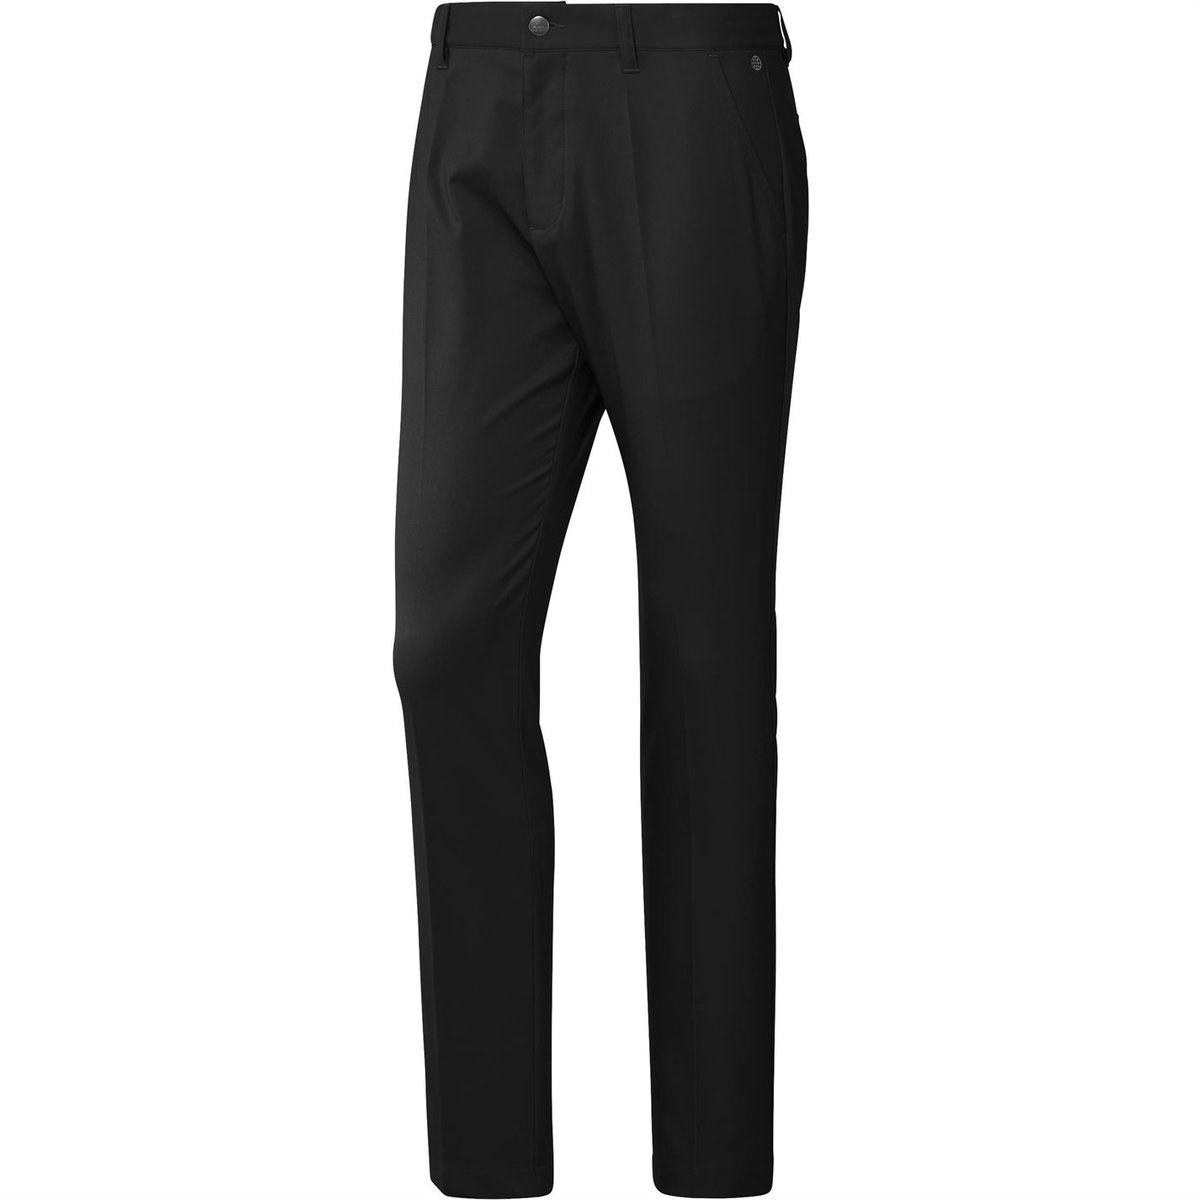 OO | Slazenger Slazenger Men's Golf Trousers - Black